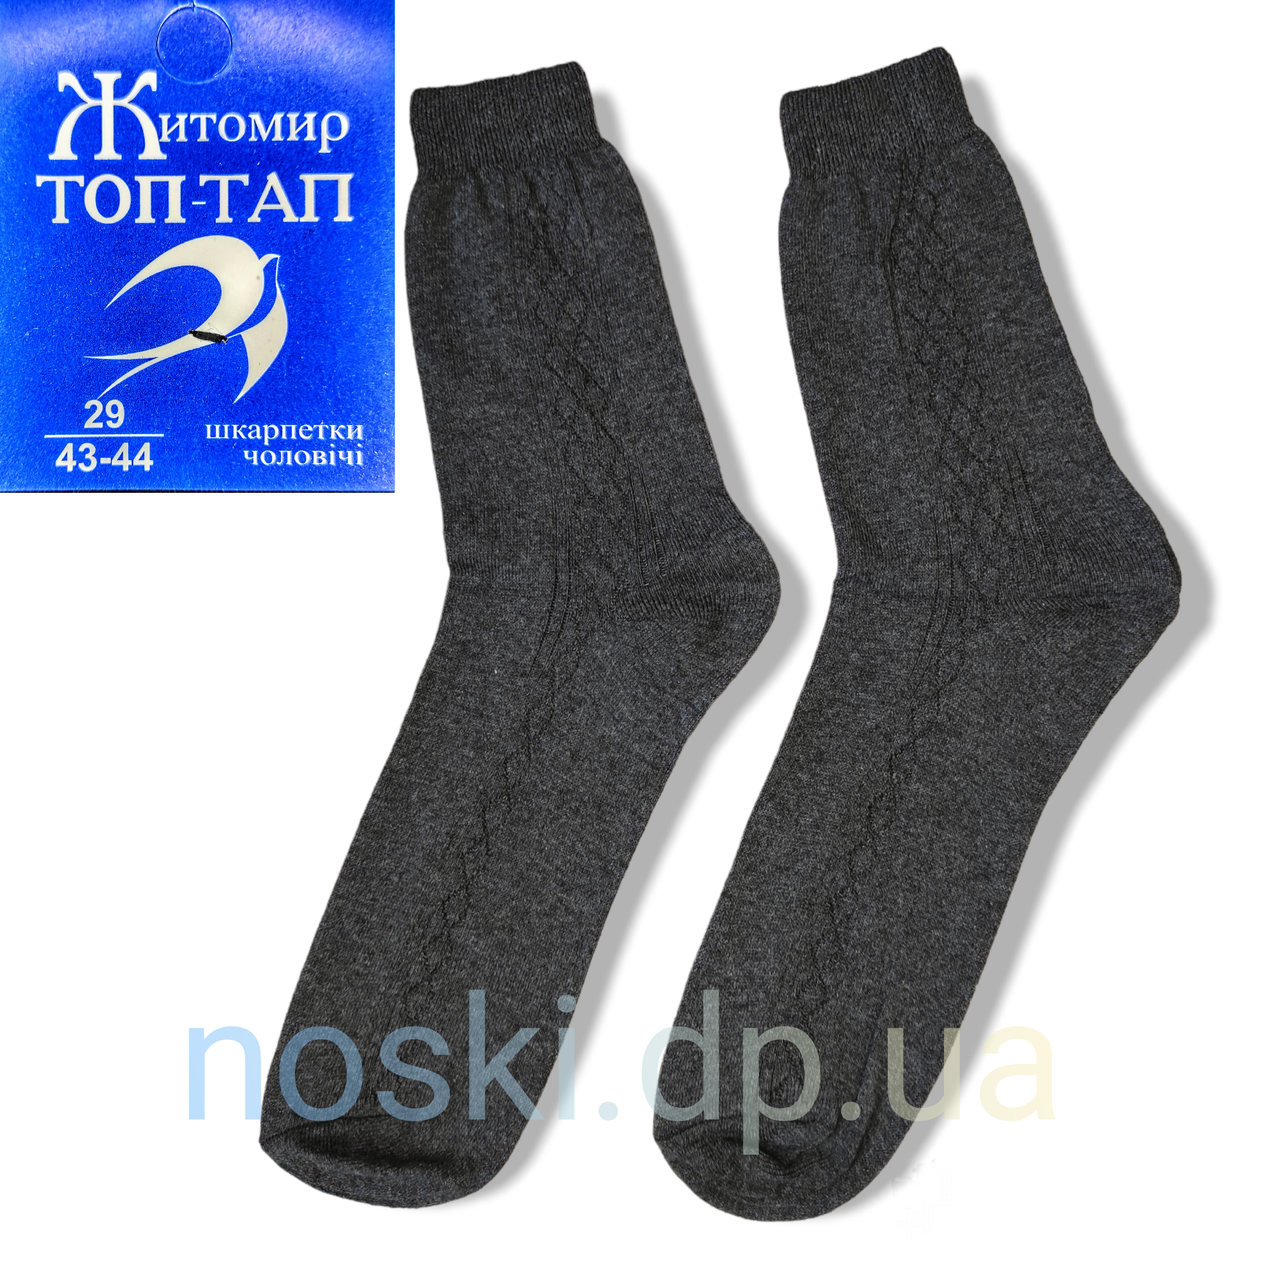 Шкарпетки чоловічі бавовняні темно-сірі Топ Тап 29 (43-44)